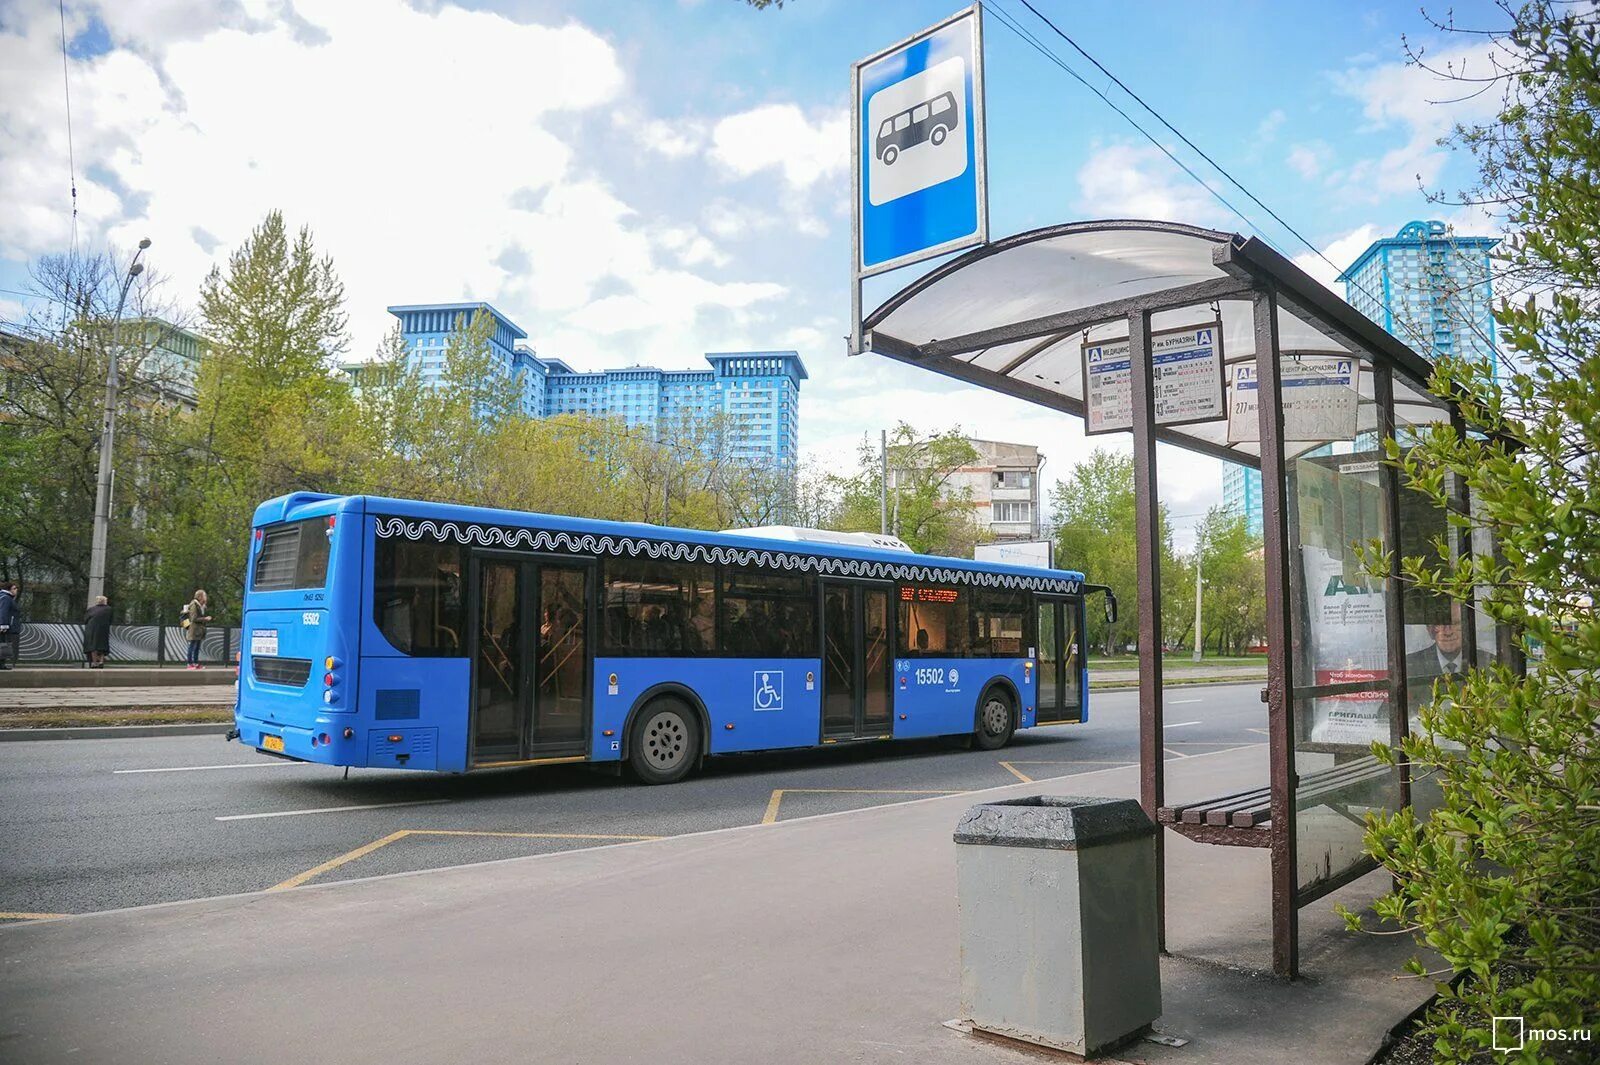 Остановка синий. Автобусная остановка. Автобусная остановка с автобусом. Остановки городского транспорта. Автобус возле остановки.